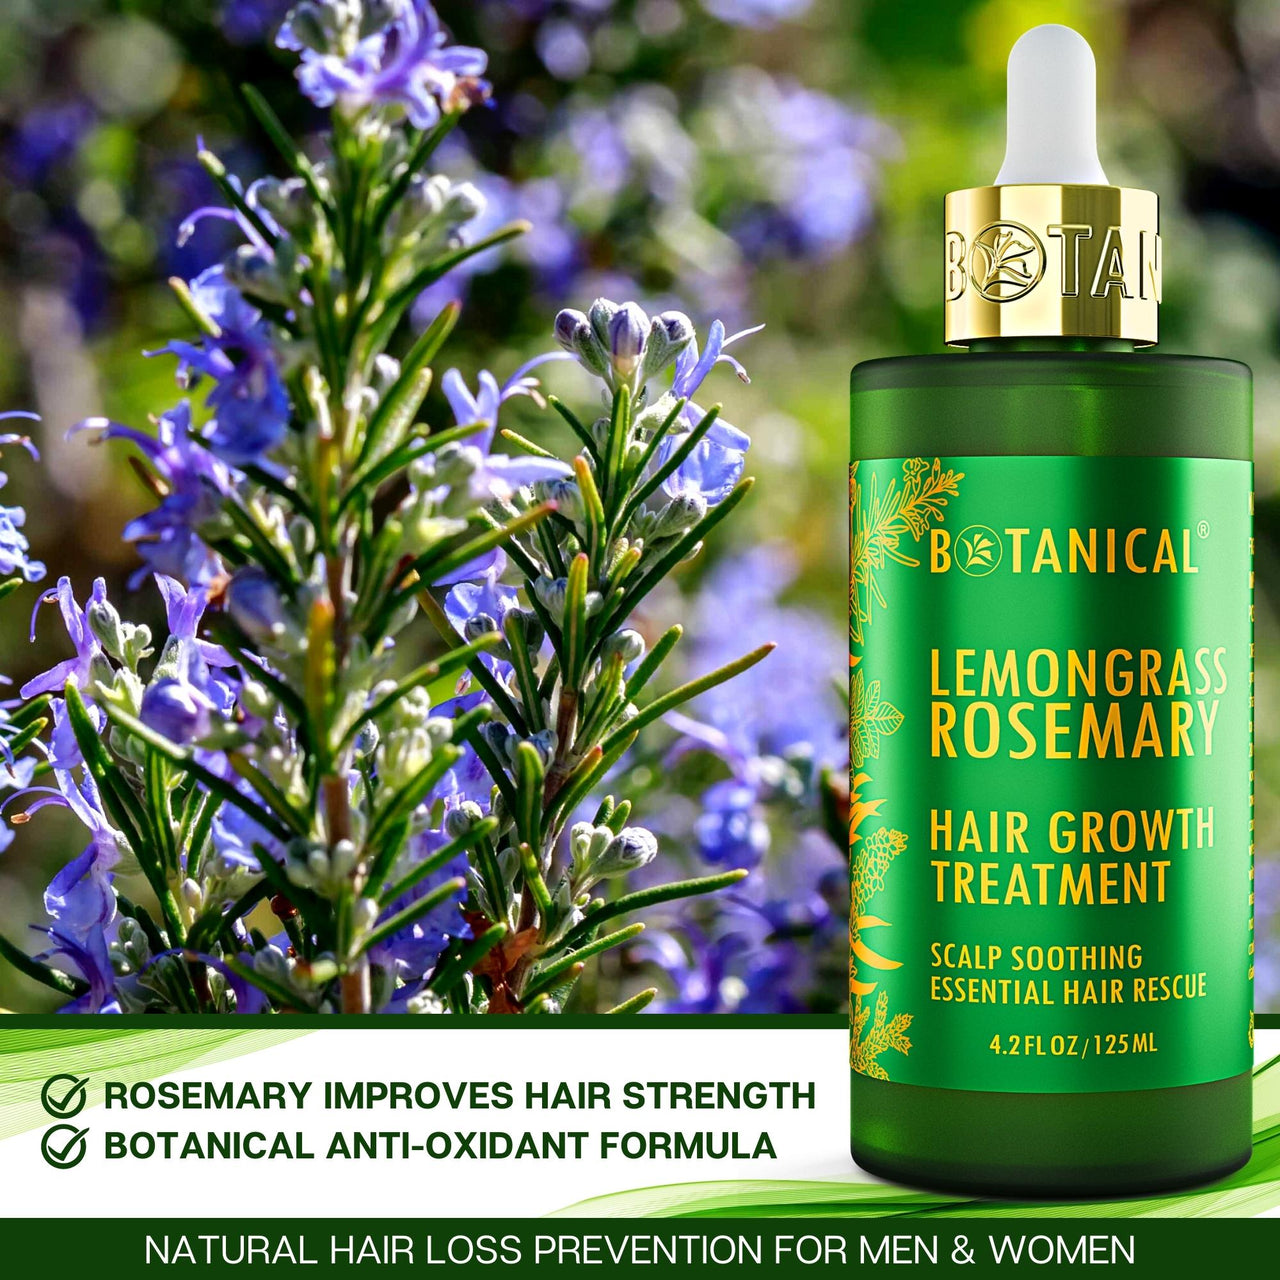 Skin Whitening Body Care Lemongrass Oil Essential Oil - China